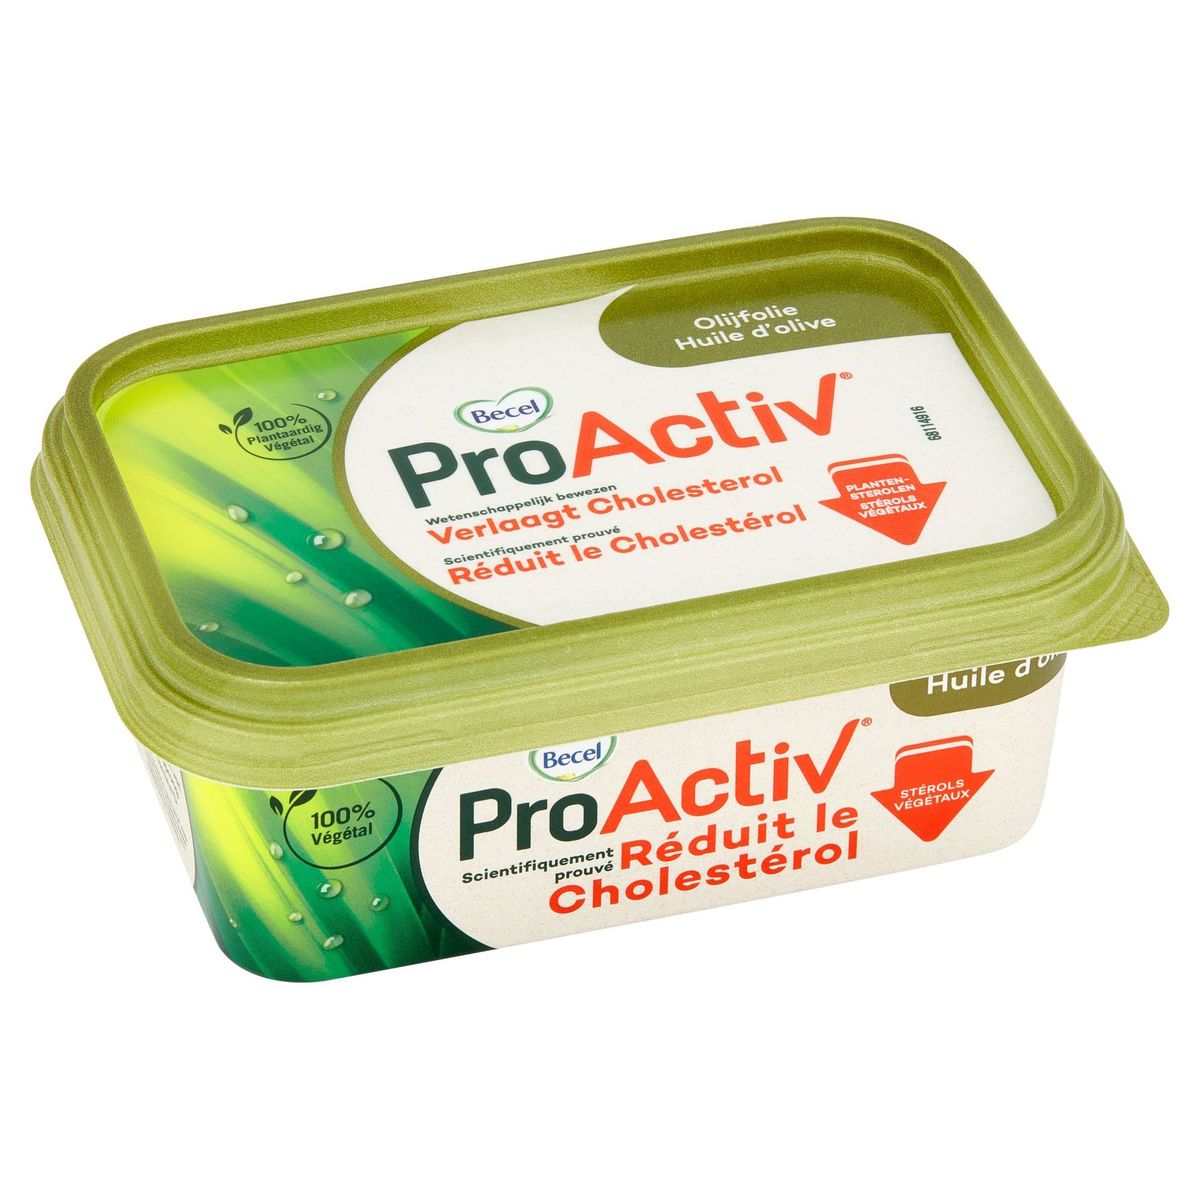 ProActiv | Réduit le cholestérol | à l'huile d'olive | 250g